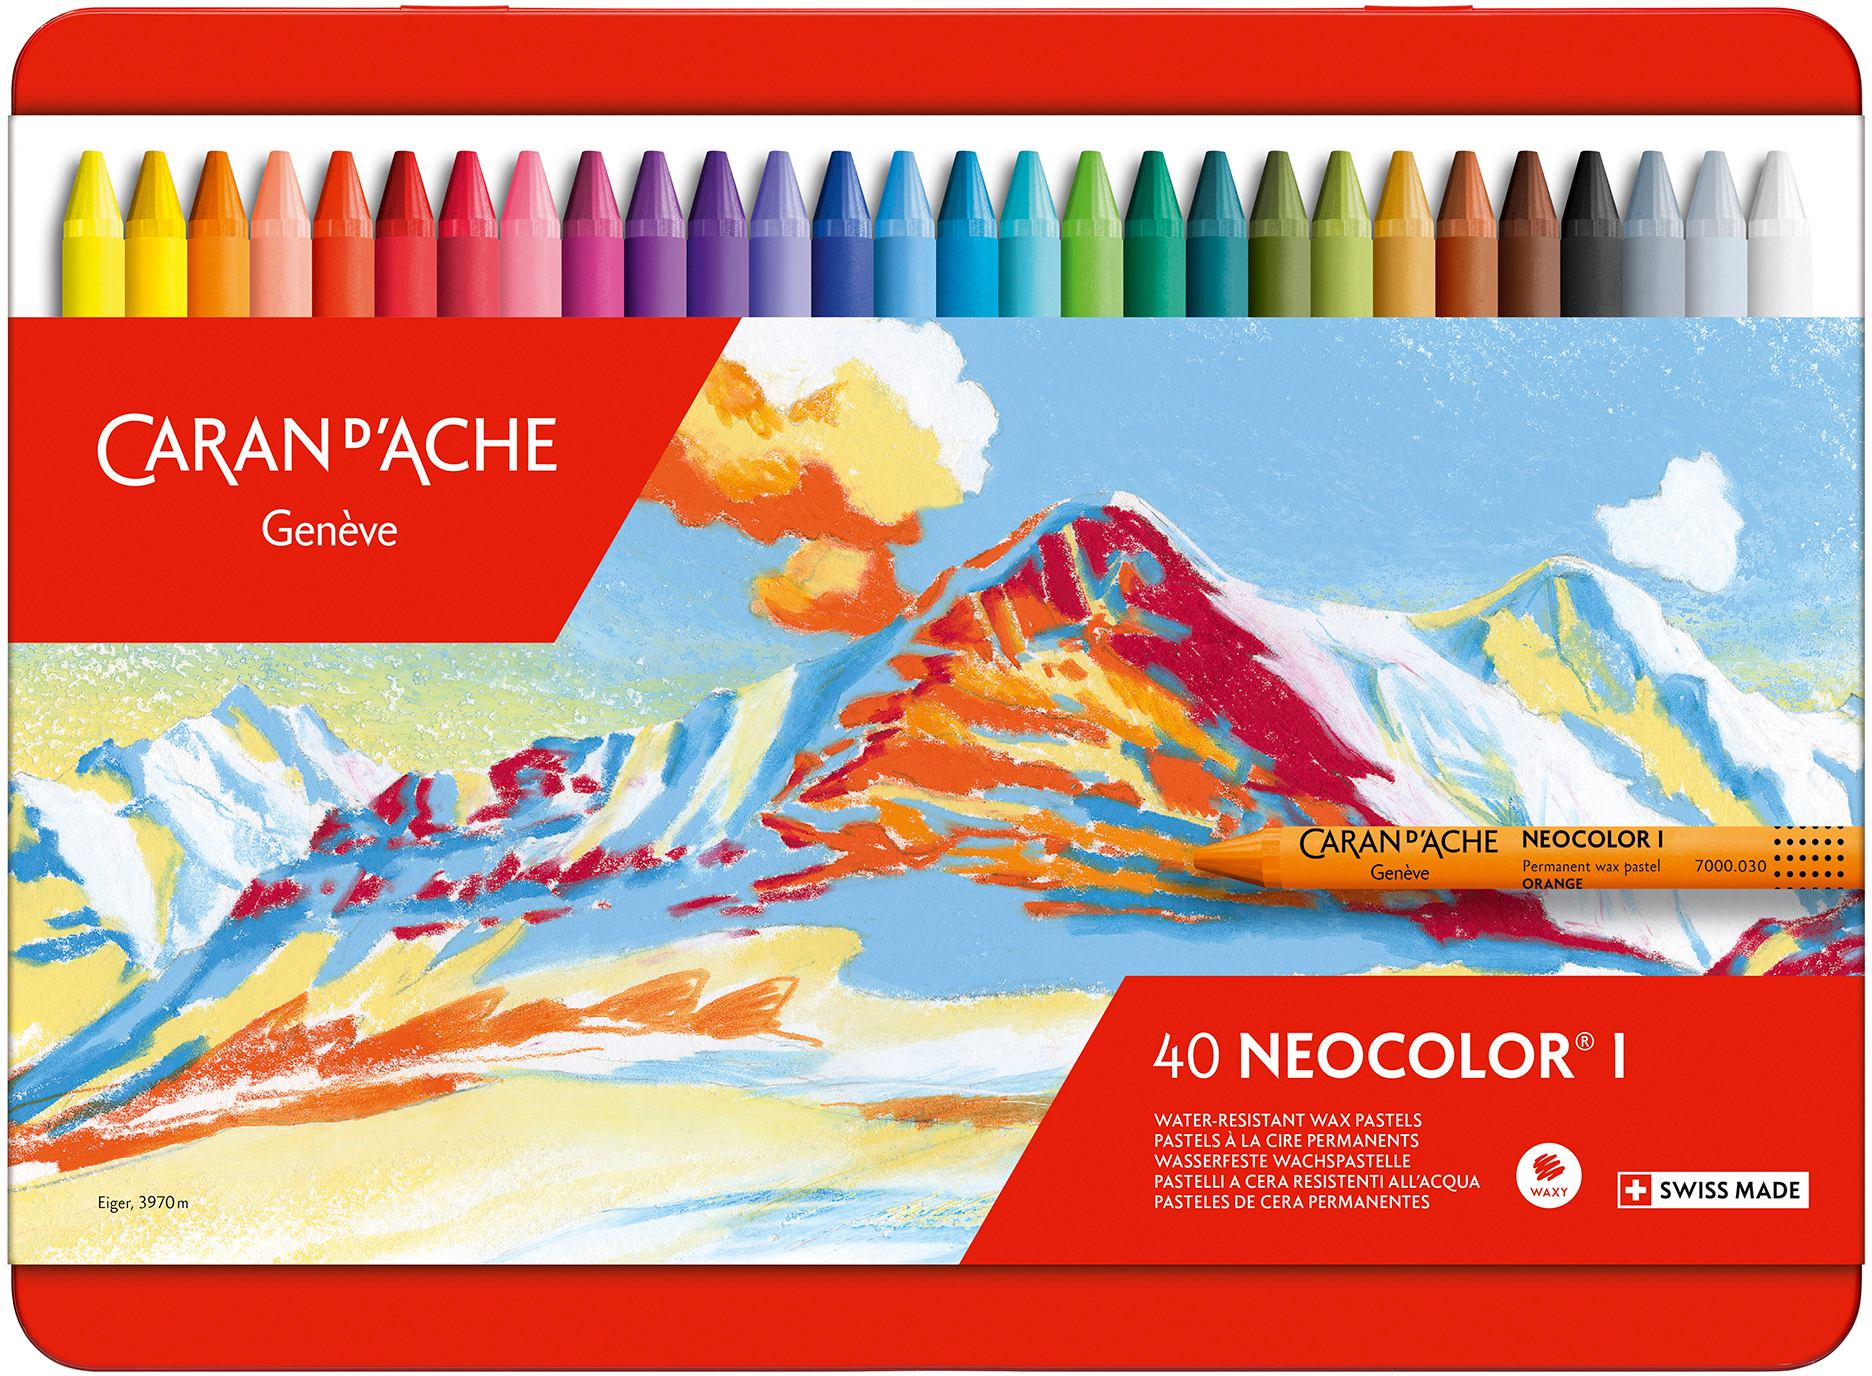 CARAN D'ACHE Crayons de cire Neocolor 1 7000.340 40 couleurs ass. box métal